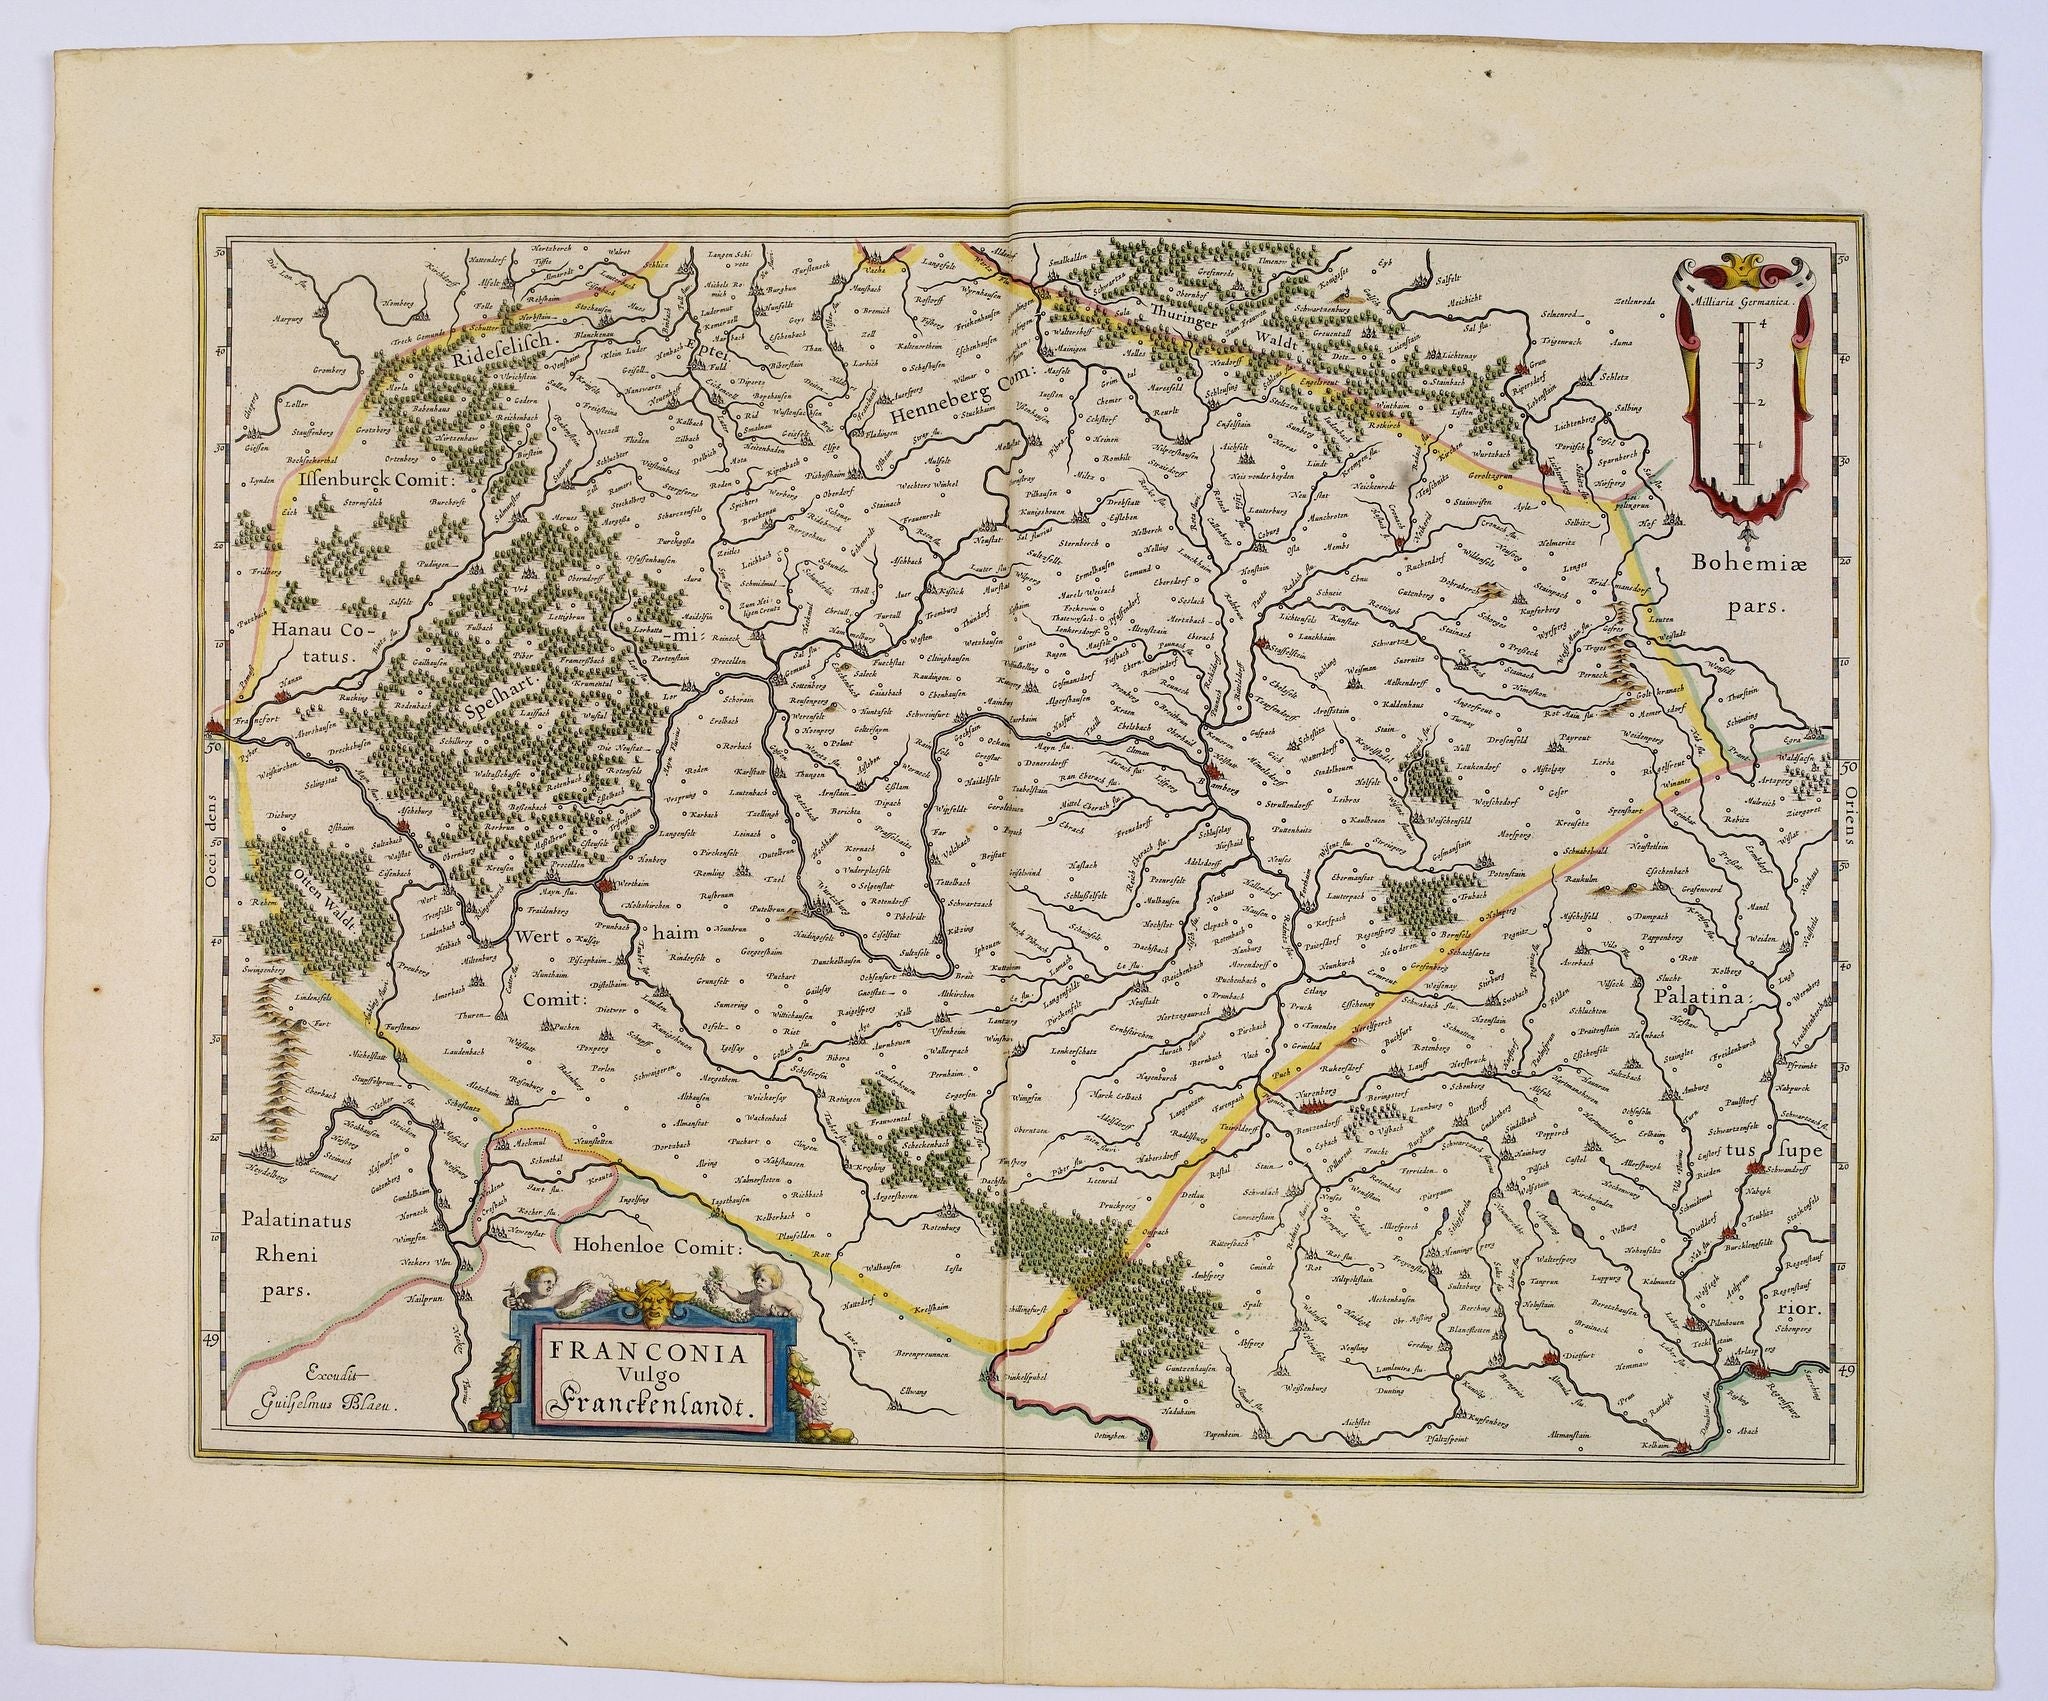 Süddeutschland im Jahr 1645 von Joan Blaeu